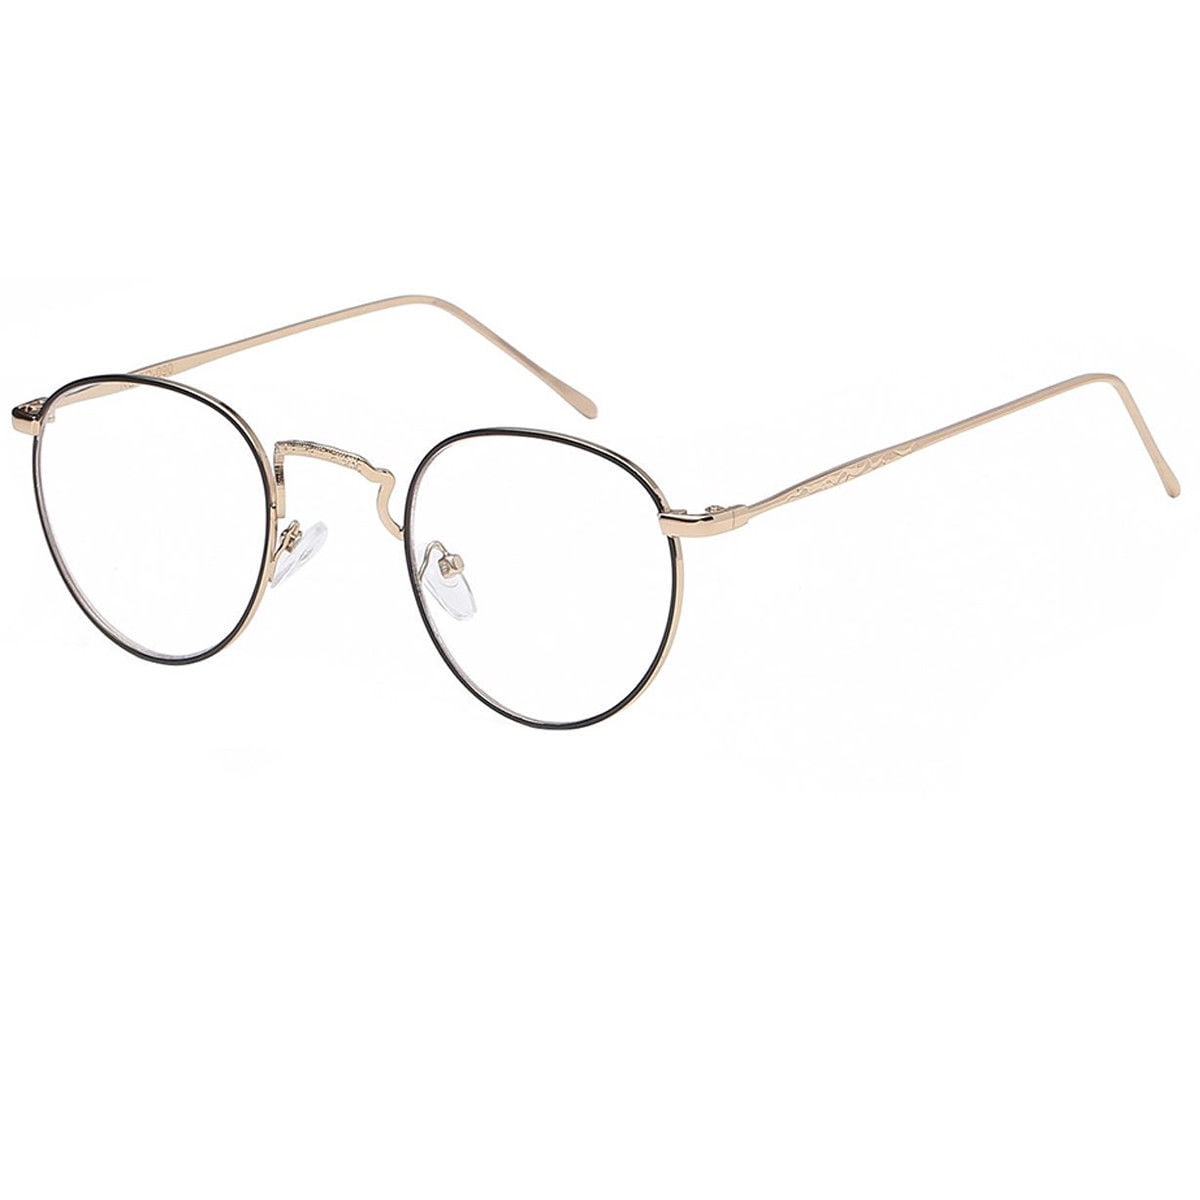 Vintage Style Clear Lens Round Glasses Gold Black Metal Frame Unisex Eyeglasses 